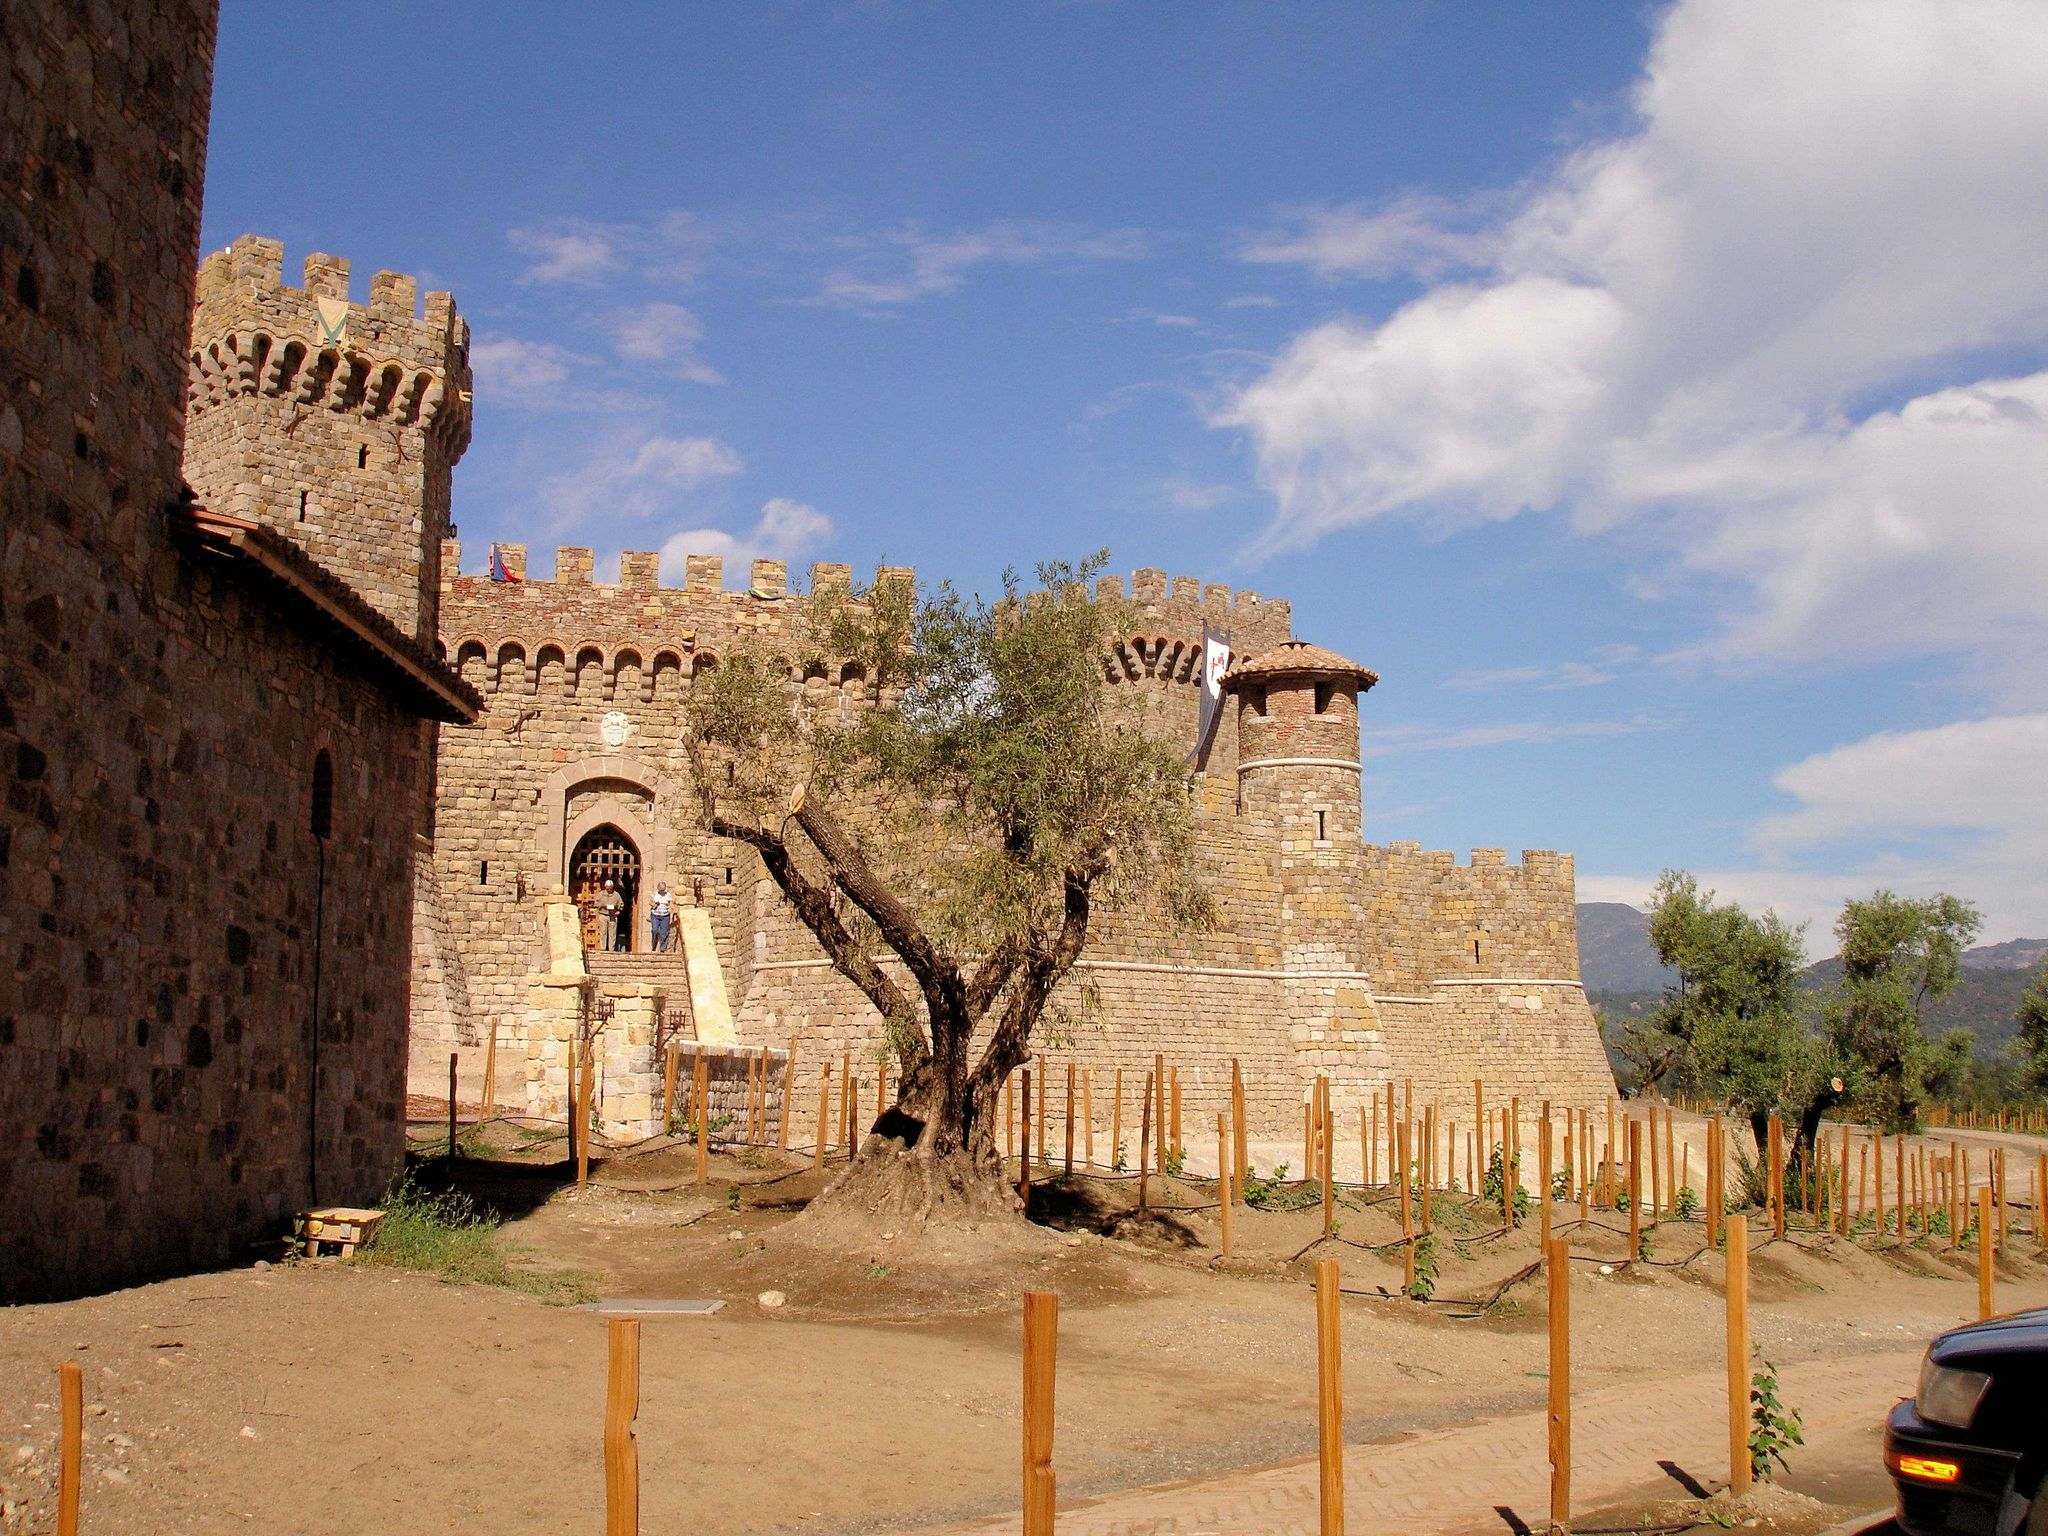 castello di amorosa10 Castello di Amorosa Winery in Napa Valley, California